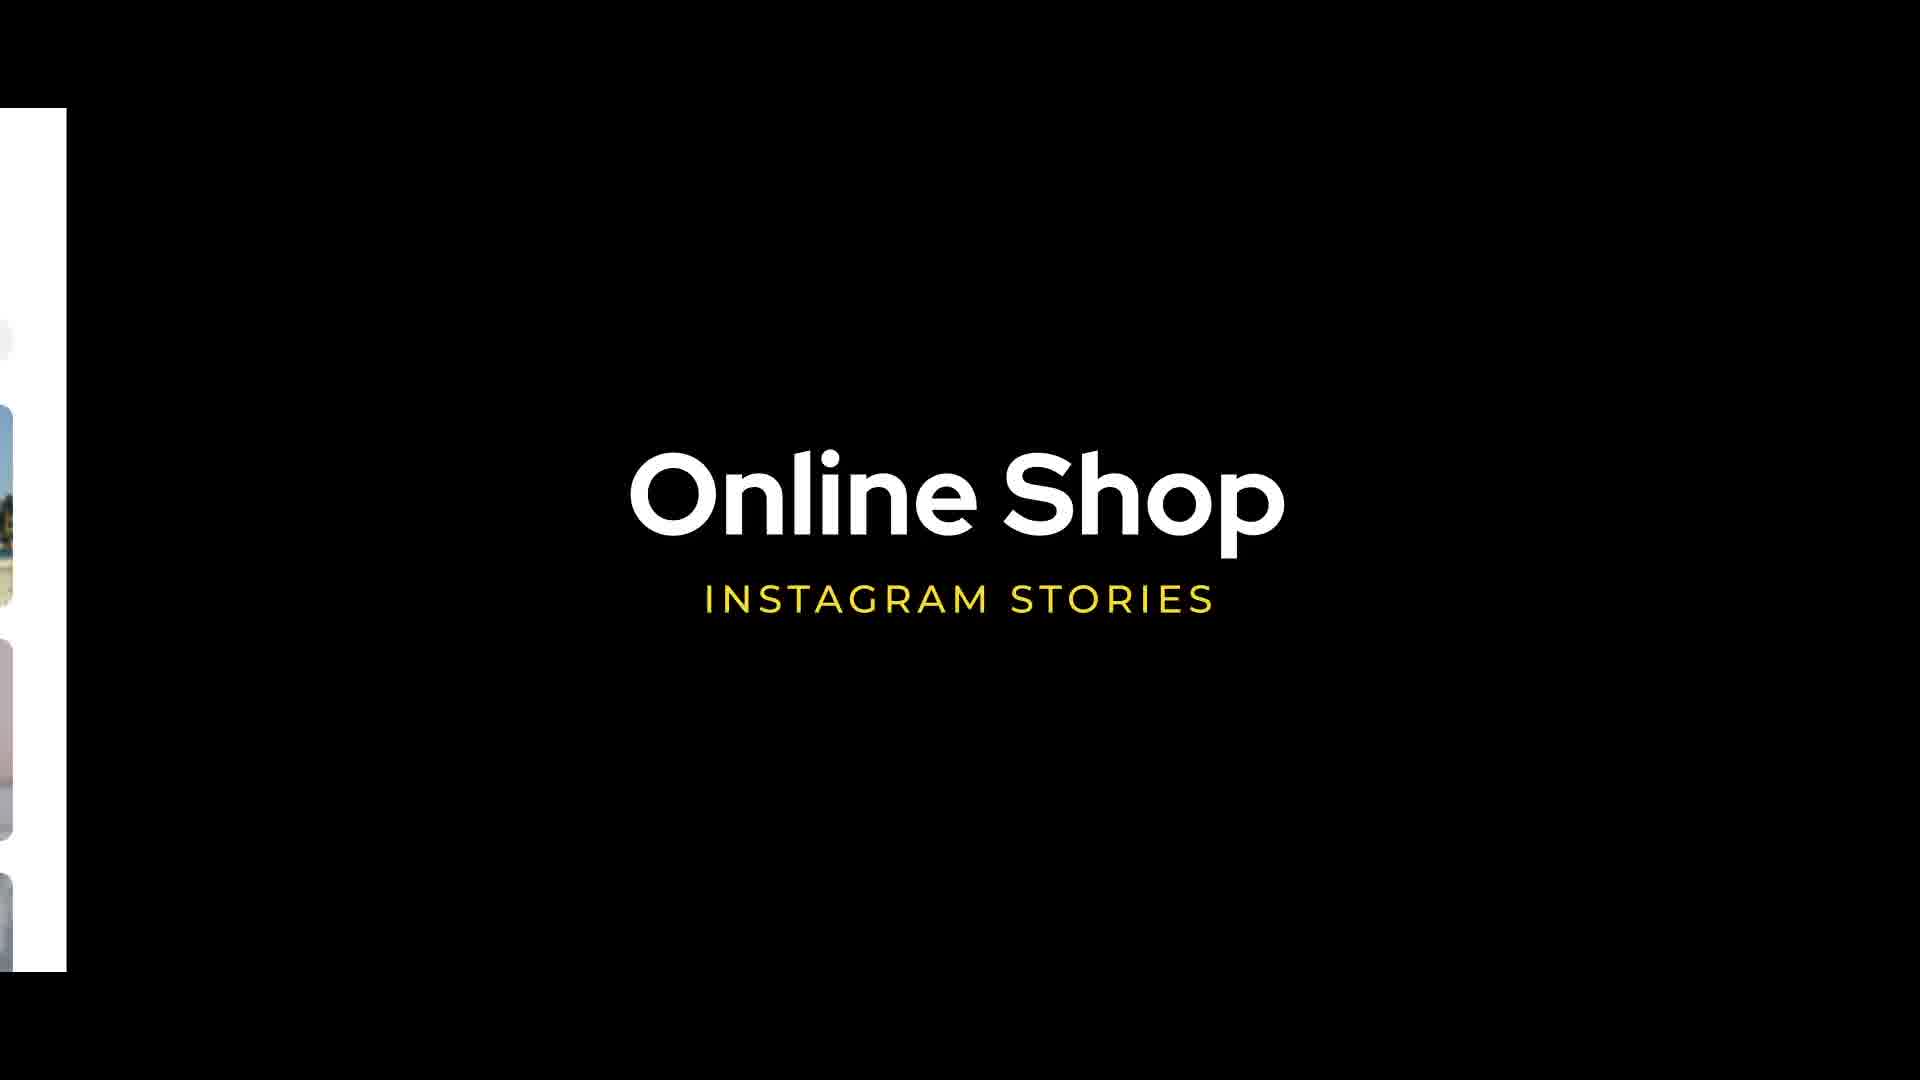 Online Shop Instagram Stories for Premiere Pro Videohive 33317007 Premiere Pro Image 12